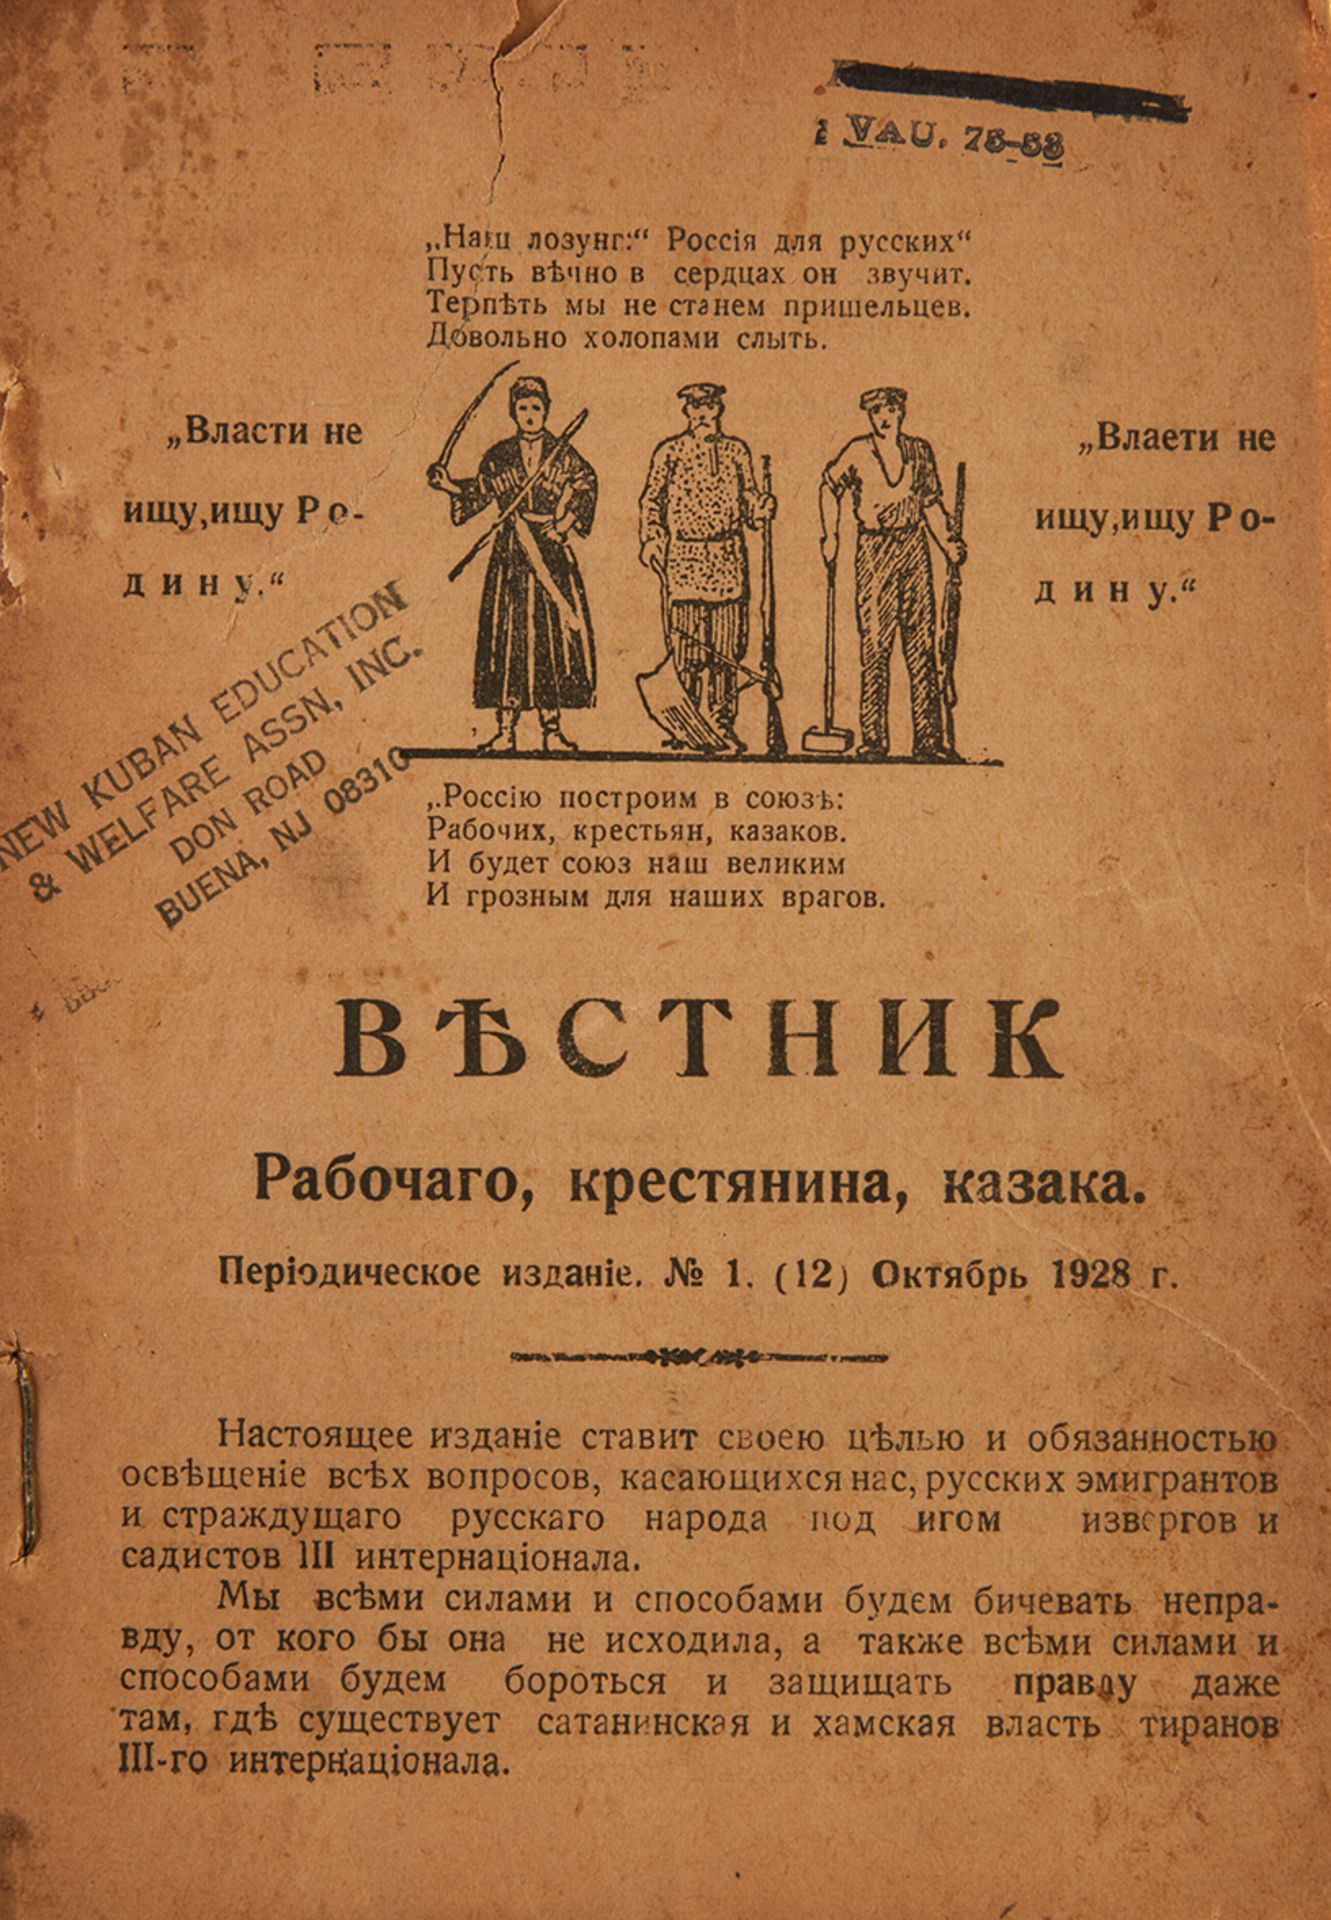 Herald of the worker, peasant, Cossack. - No. 1. - Harbin October 1928 - 31 c. ; 17 [...]